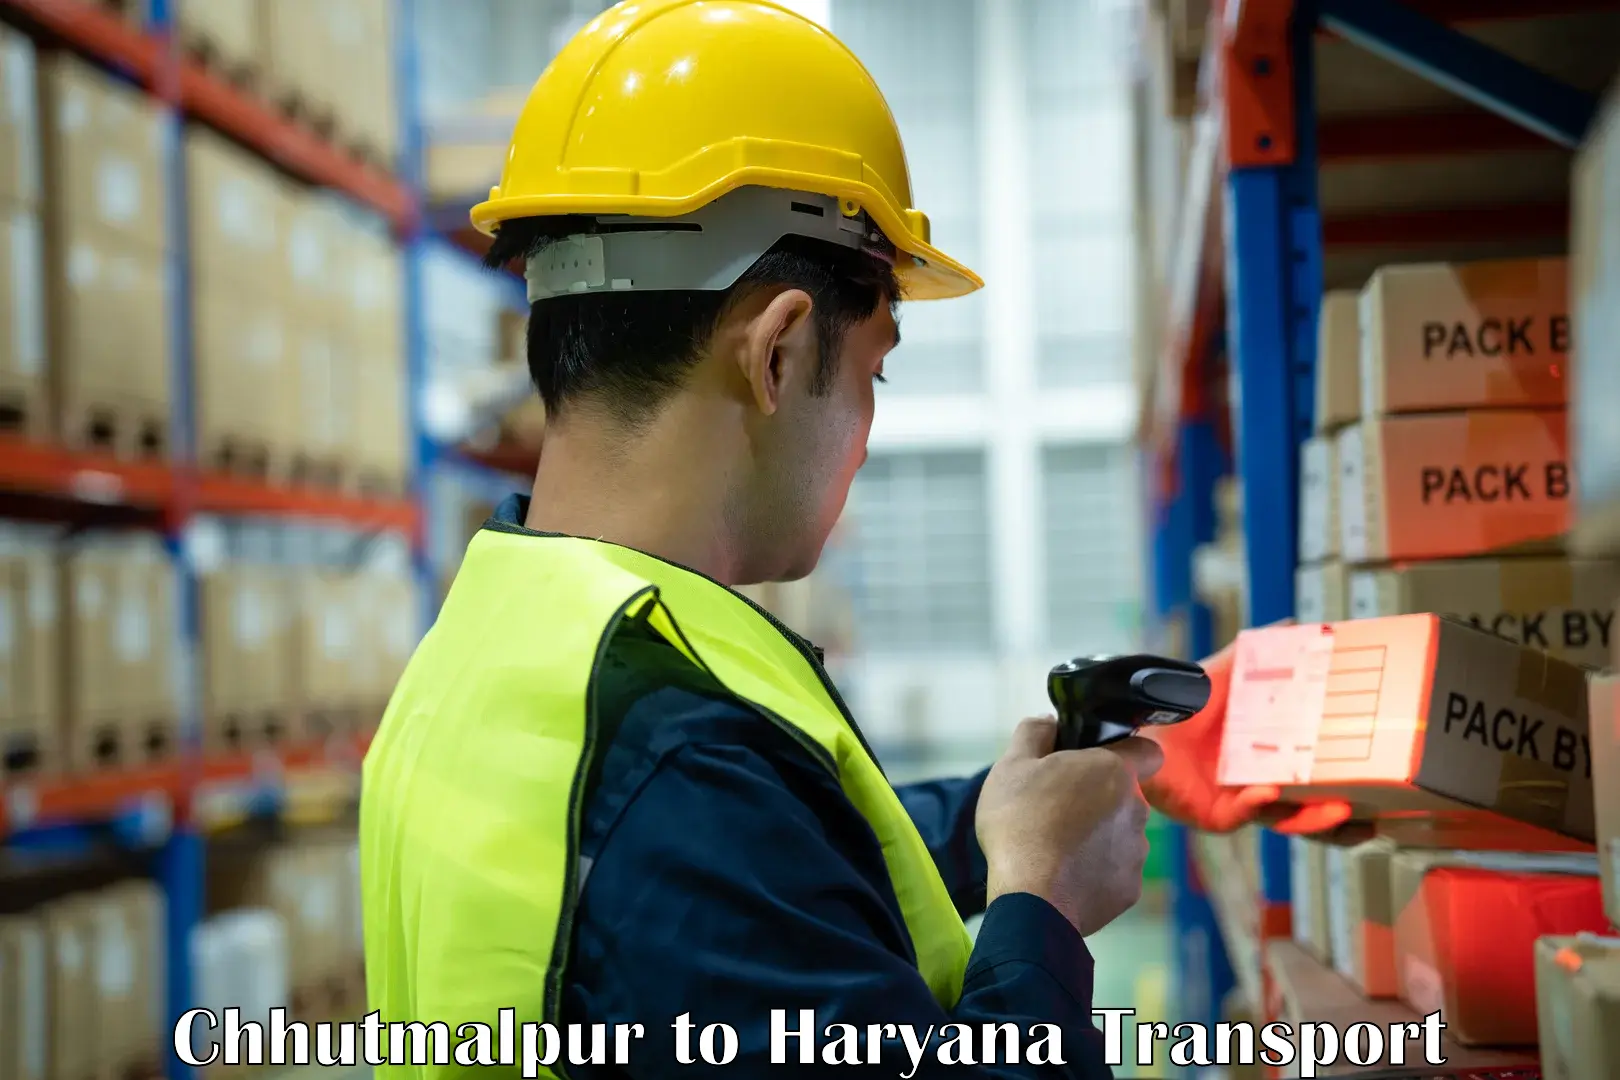 Truck transport companies in India Chhutmalpur to Haryana